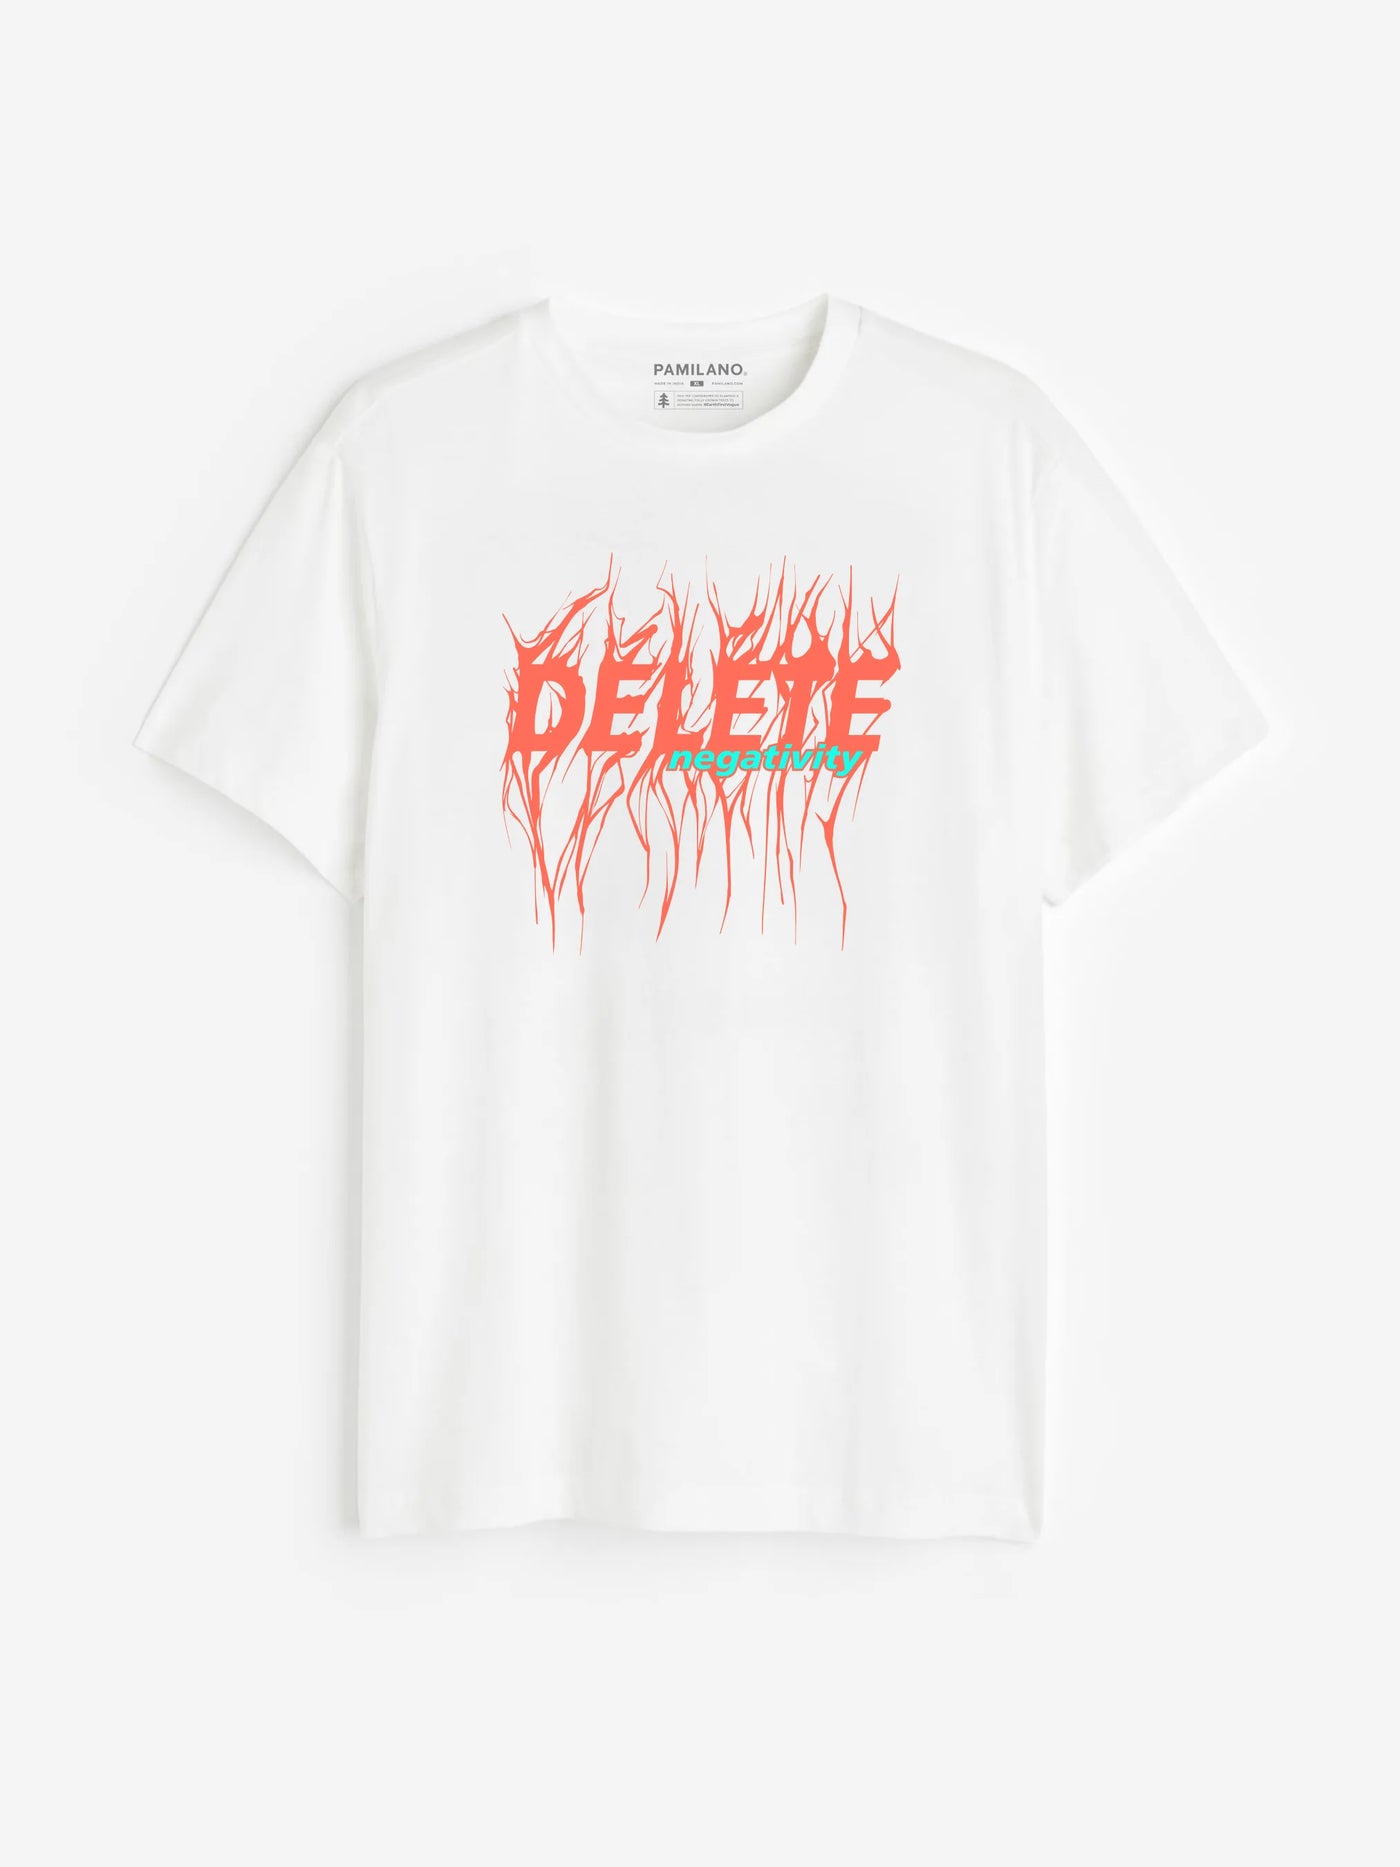 Delete Negativity Slogan - Unisex T-Shirt